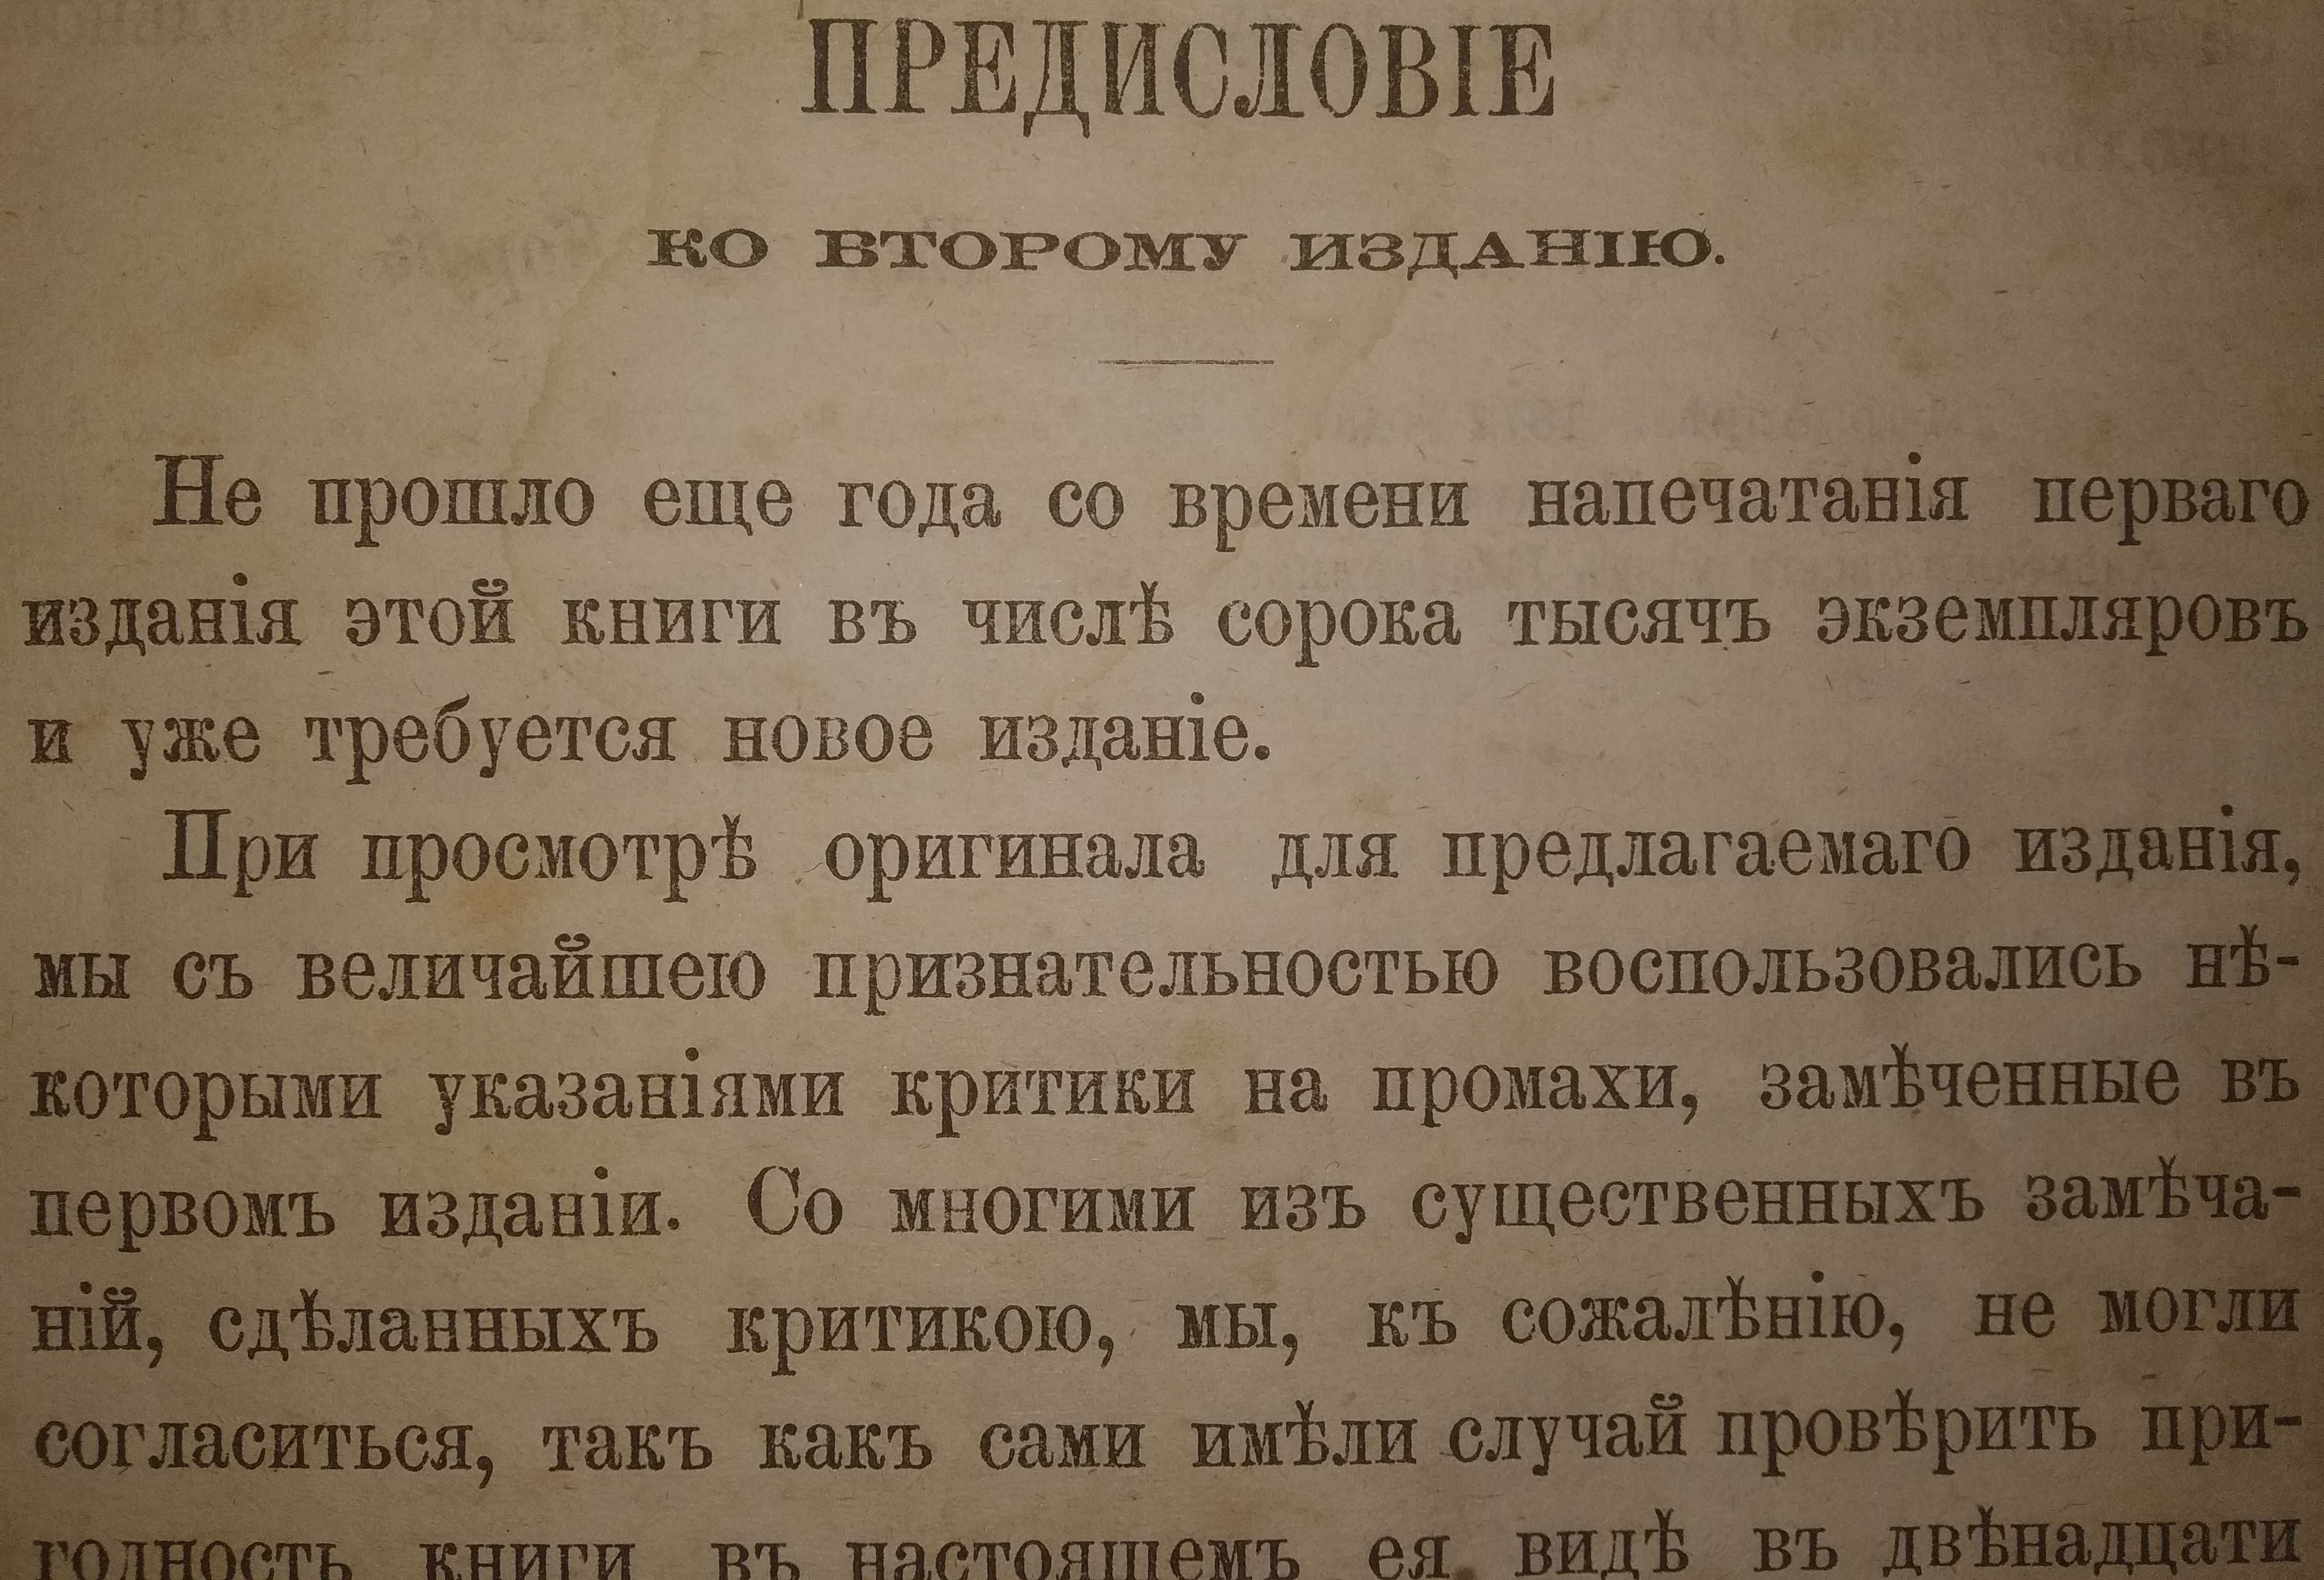 Книга для чтения учащихся в школе и дома "Наш друг". 1872 г. издания.